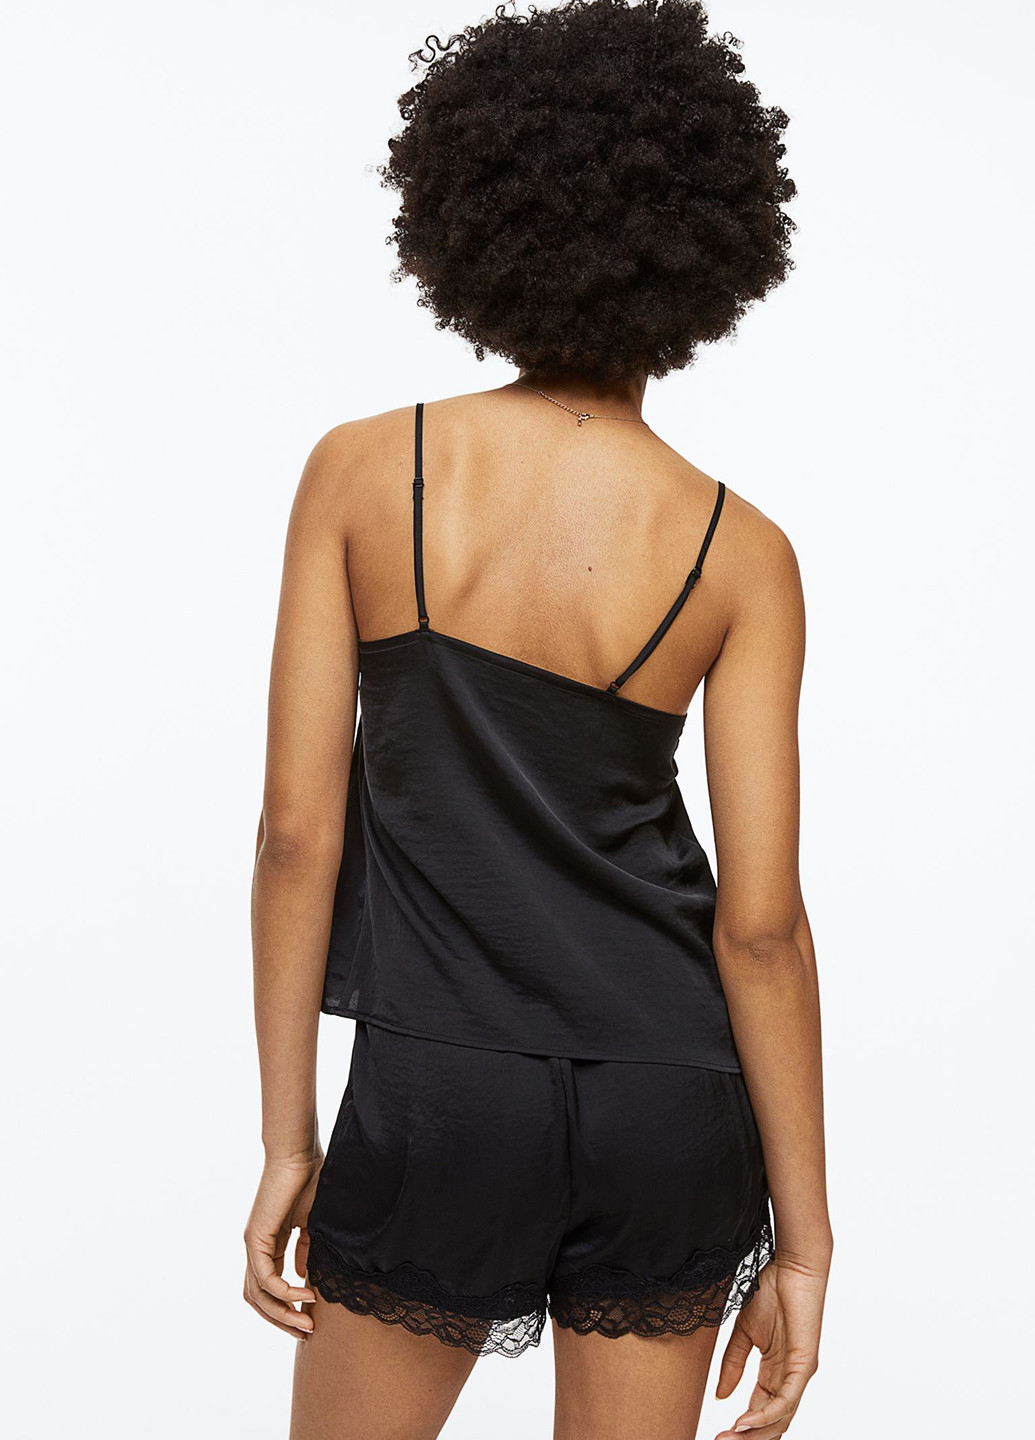 Черная всесезон пижама (топ, шорты) топ + шорты H&M